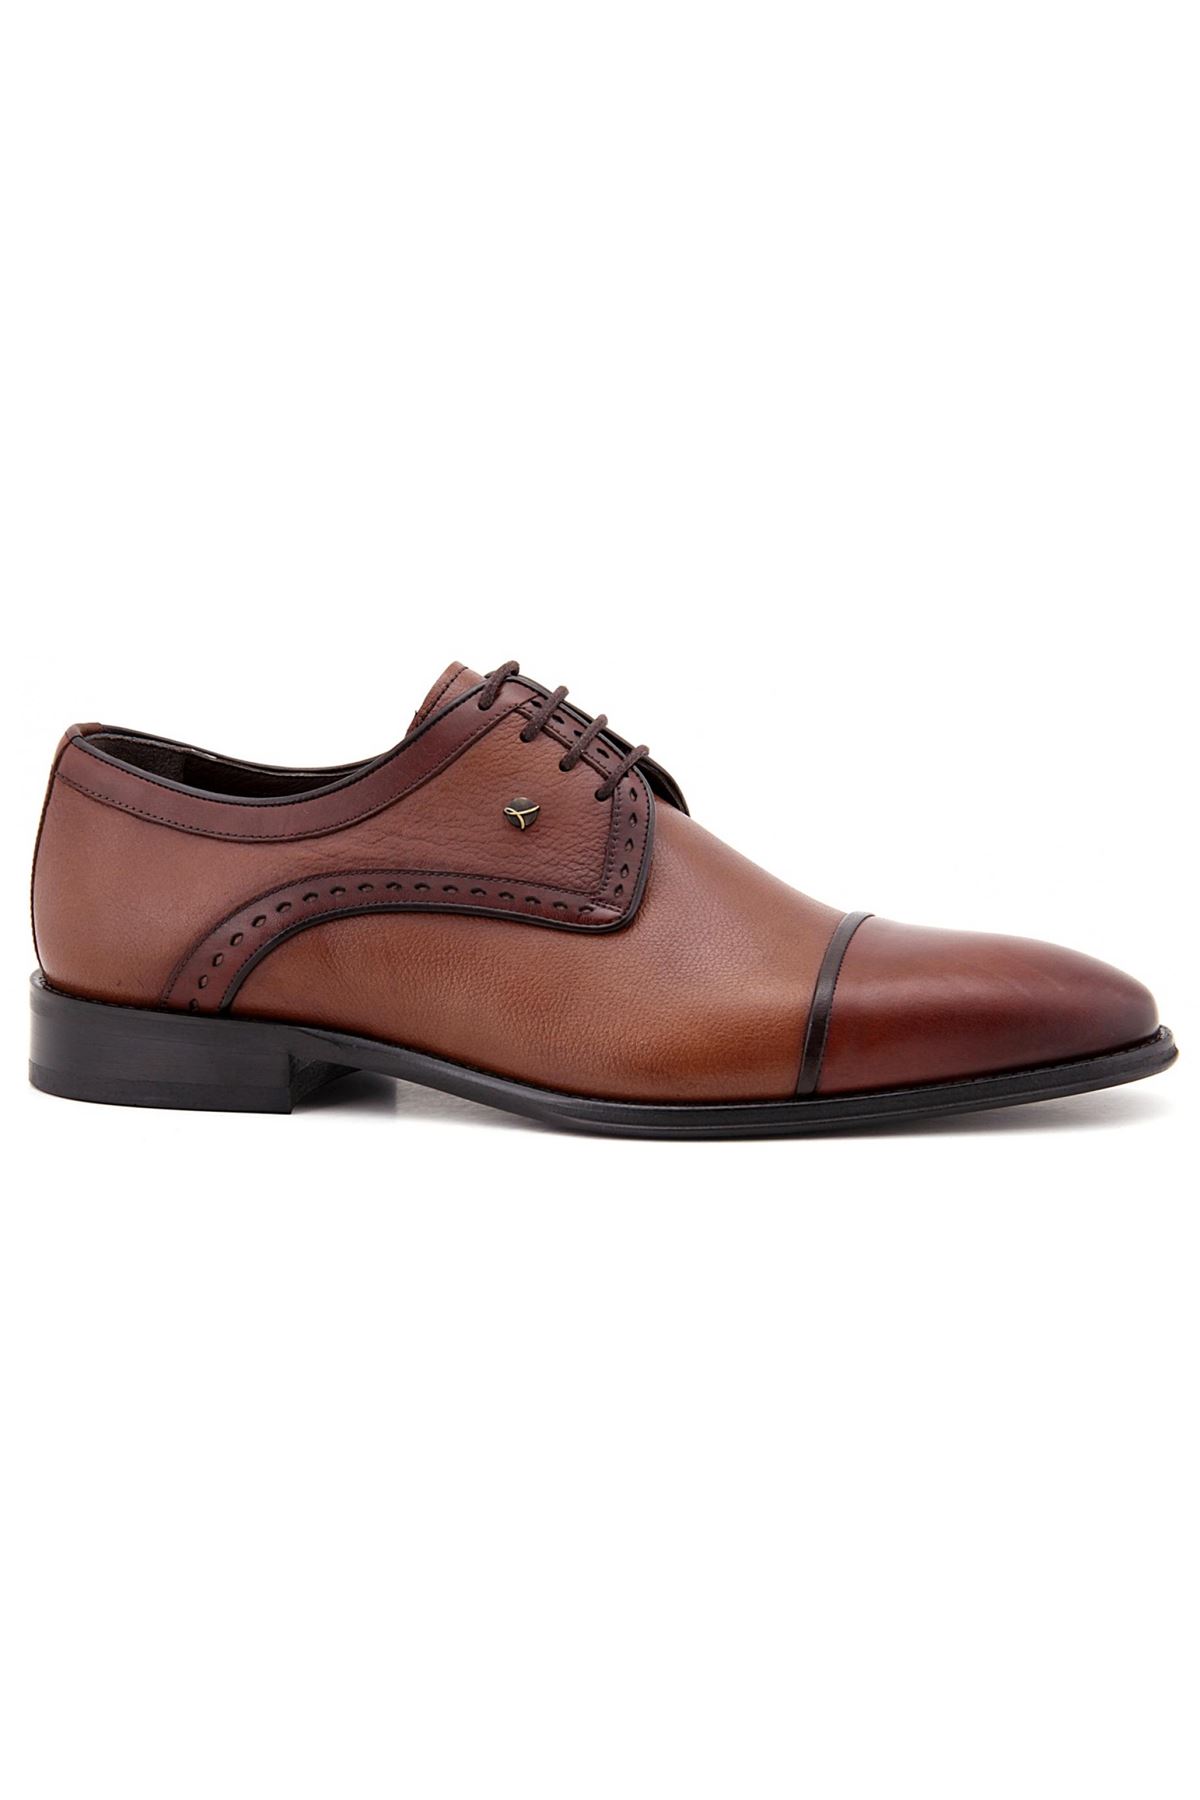 2884 Libero Klasik Erkek Ayakkabı - Taba